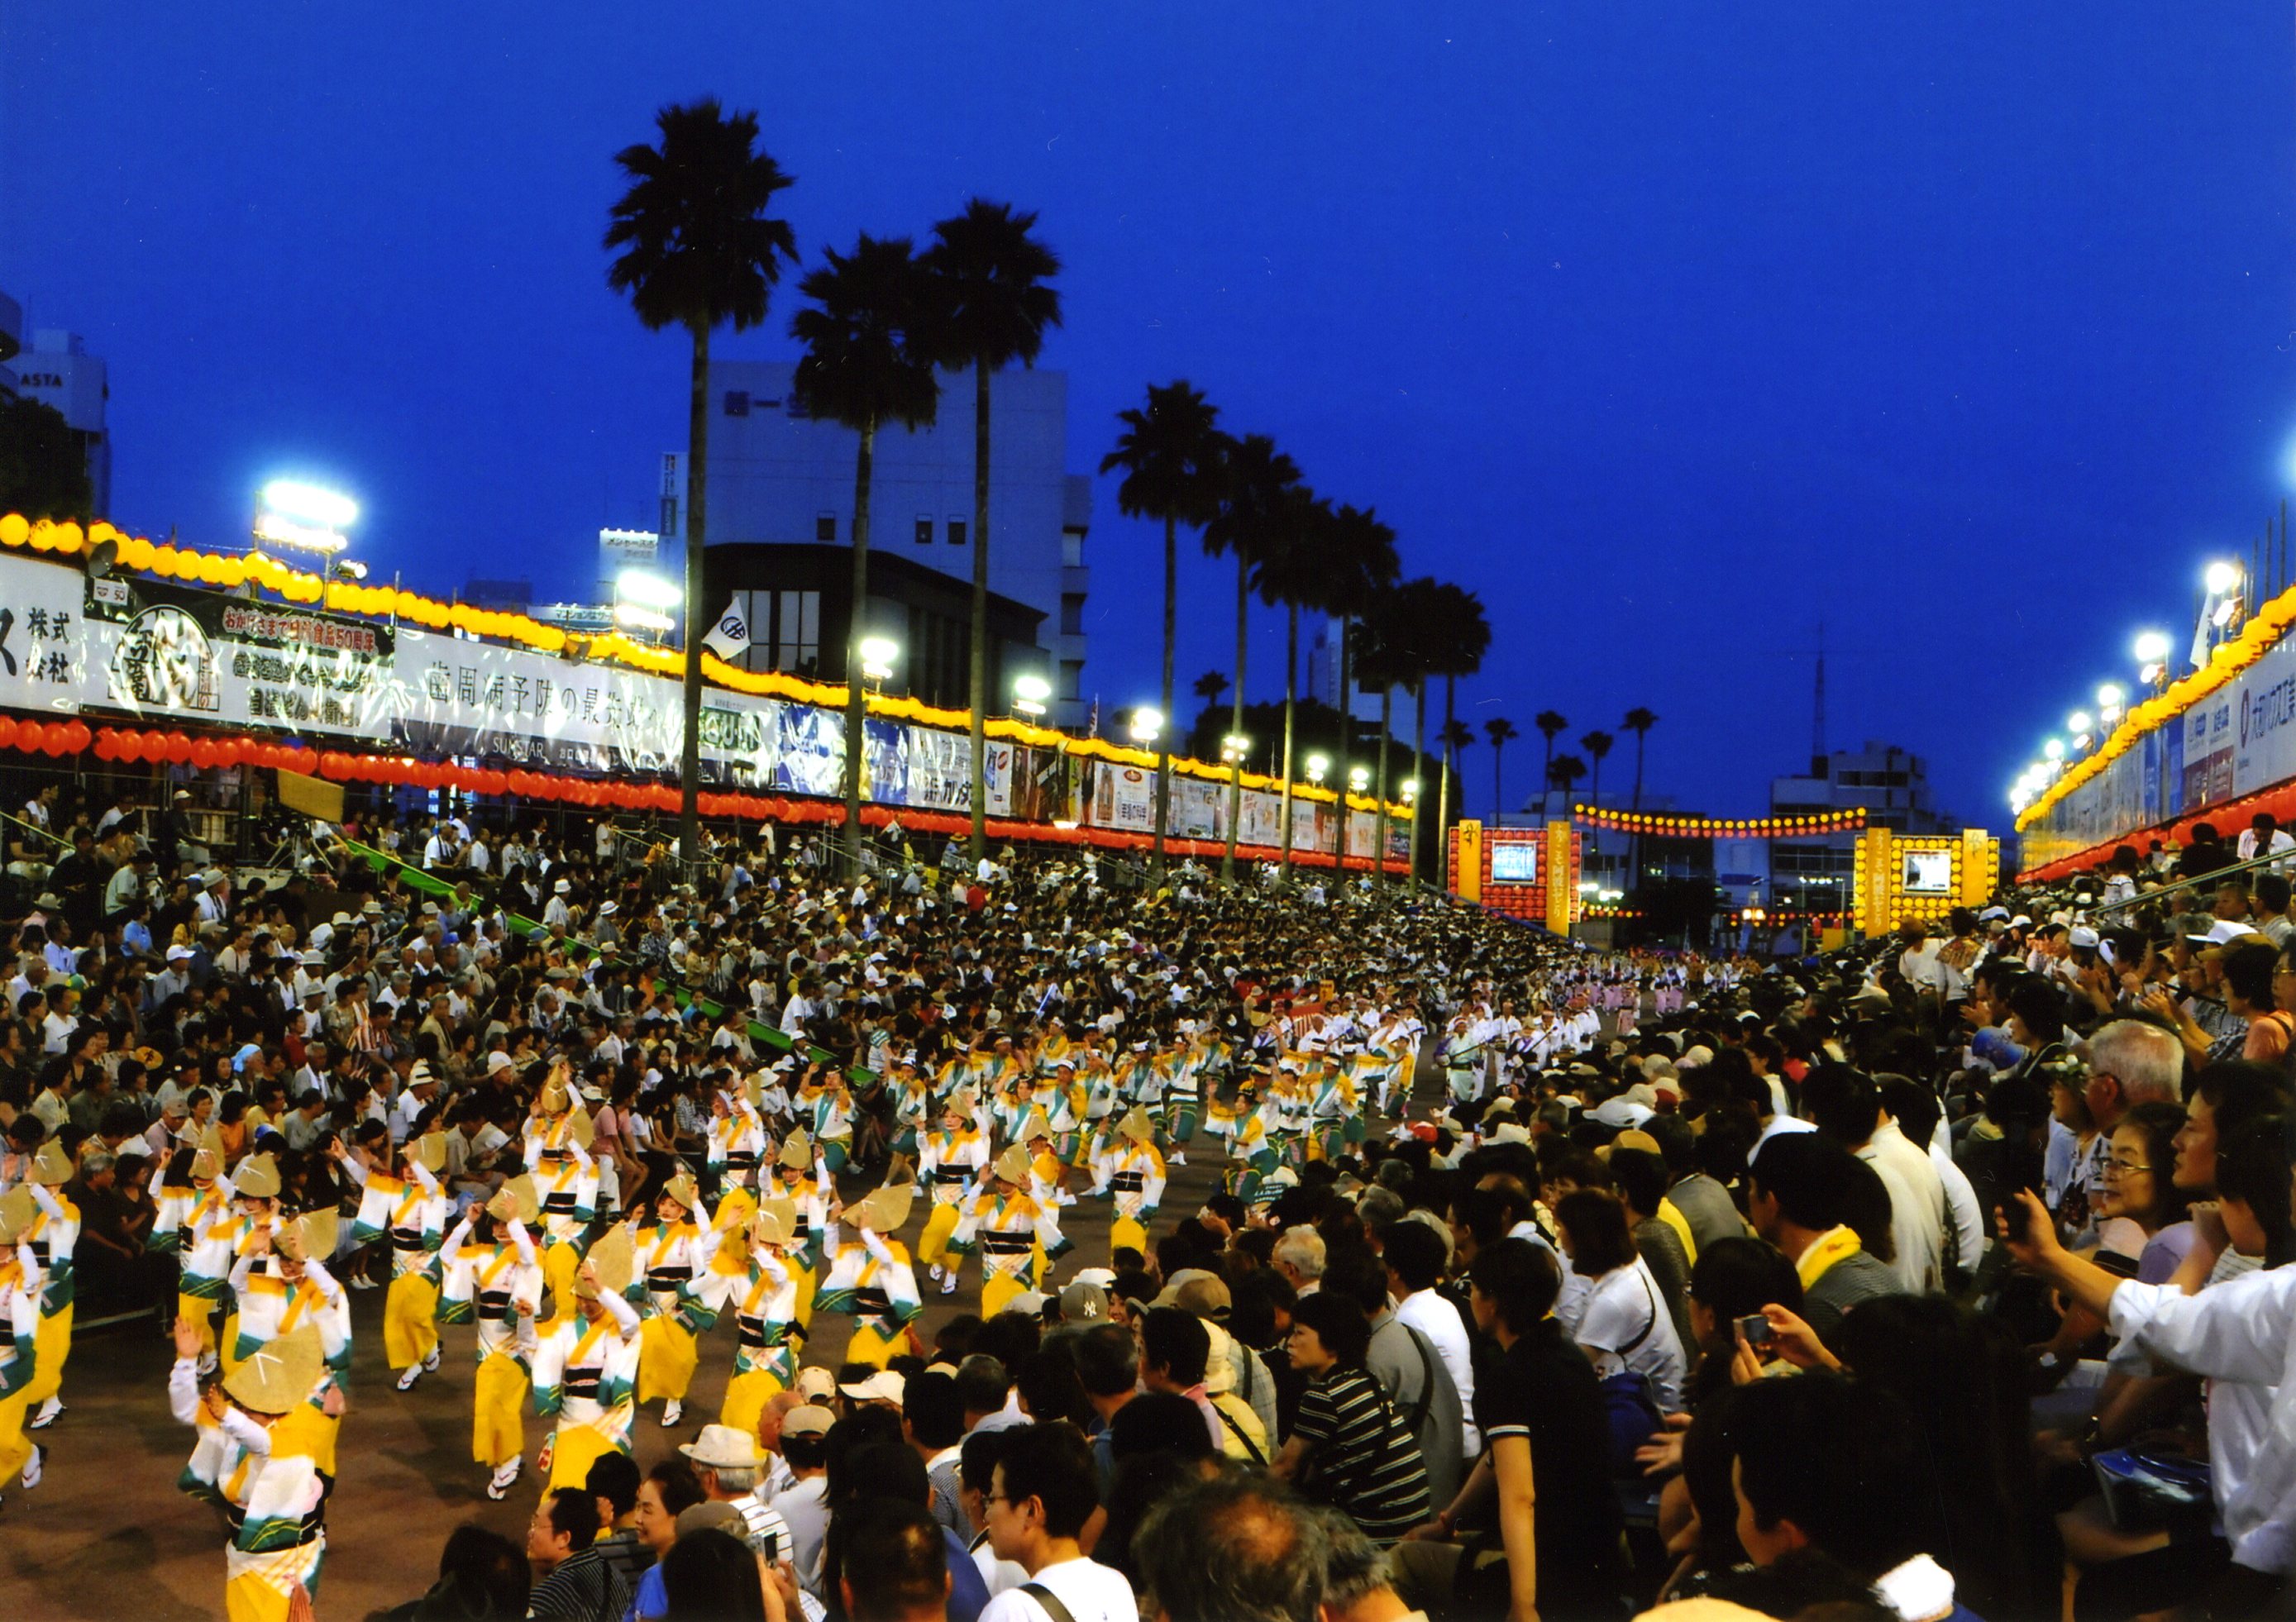 有料シートがある阿波踊りの会場の一つ、藍場浜演舞場に多くの連が入る